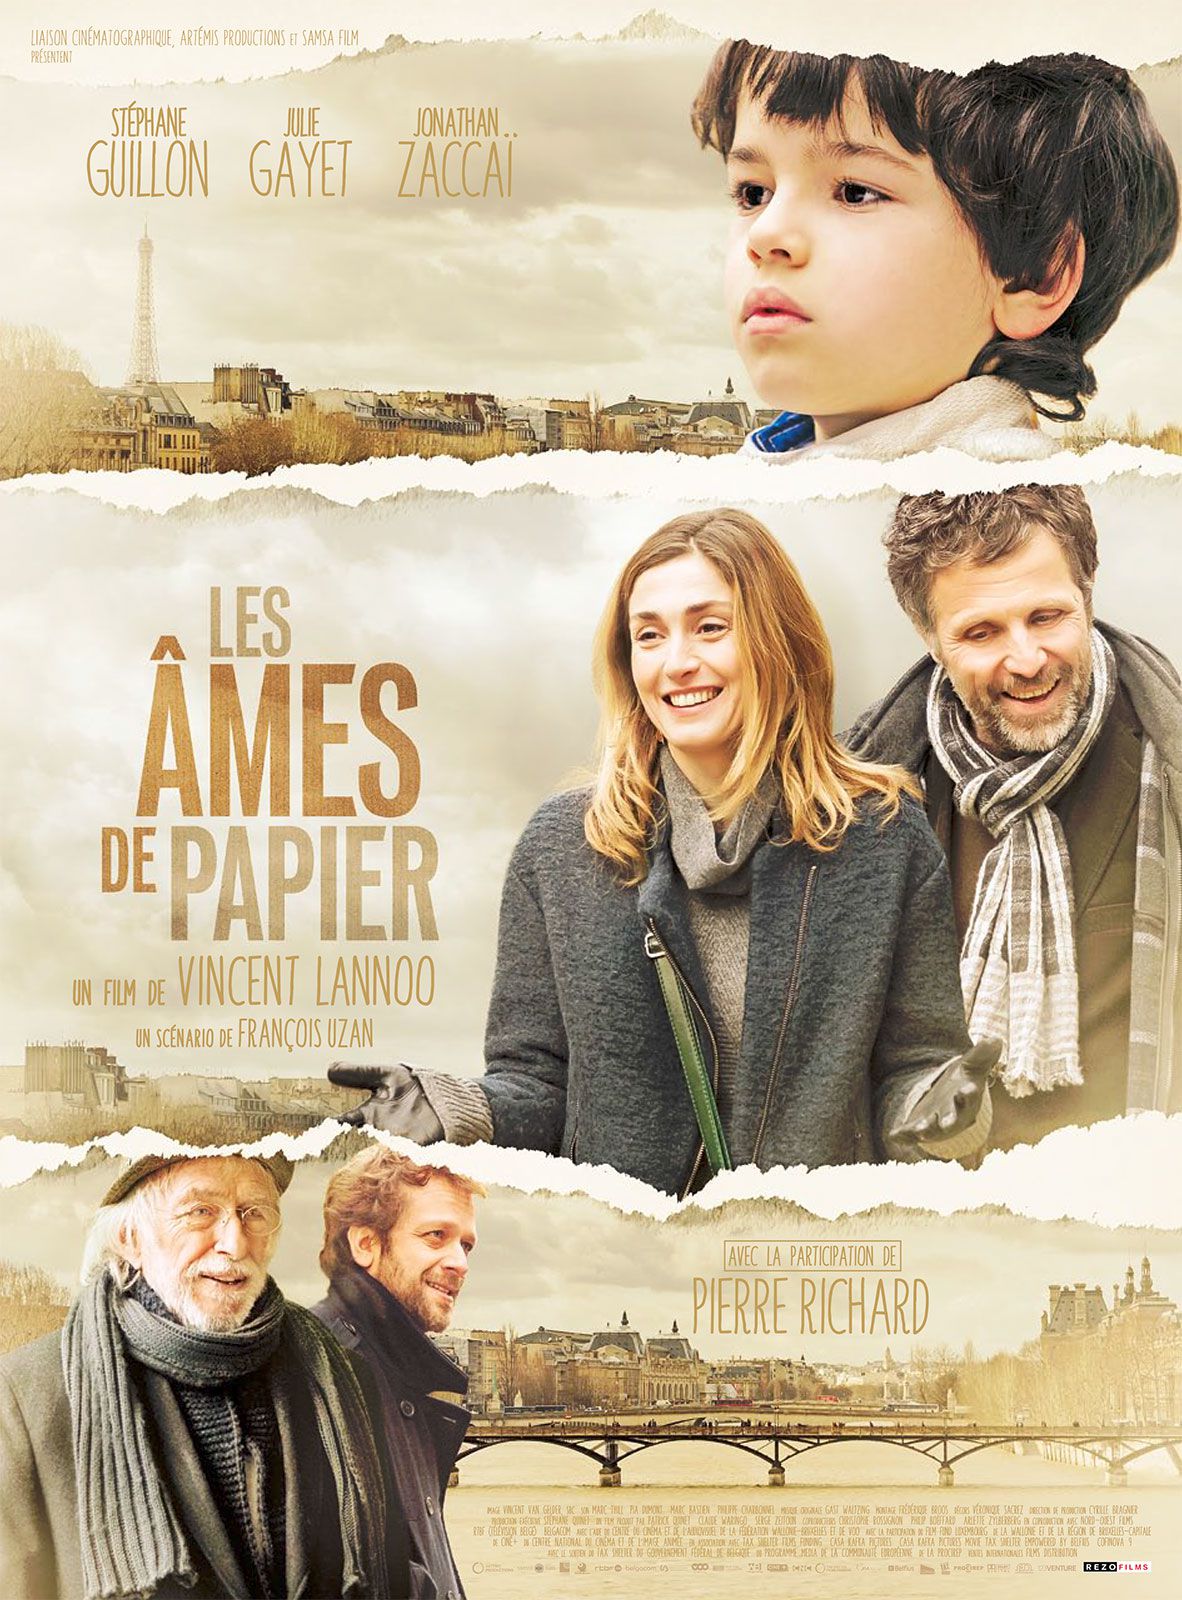 Les Âmes de papier - Film (2013) streaming VF gratuit complet